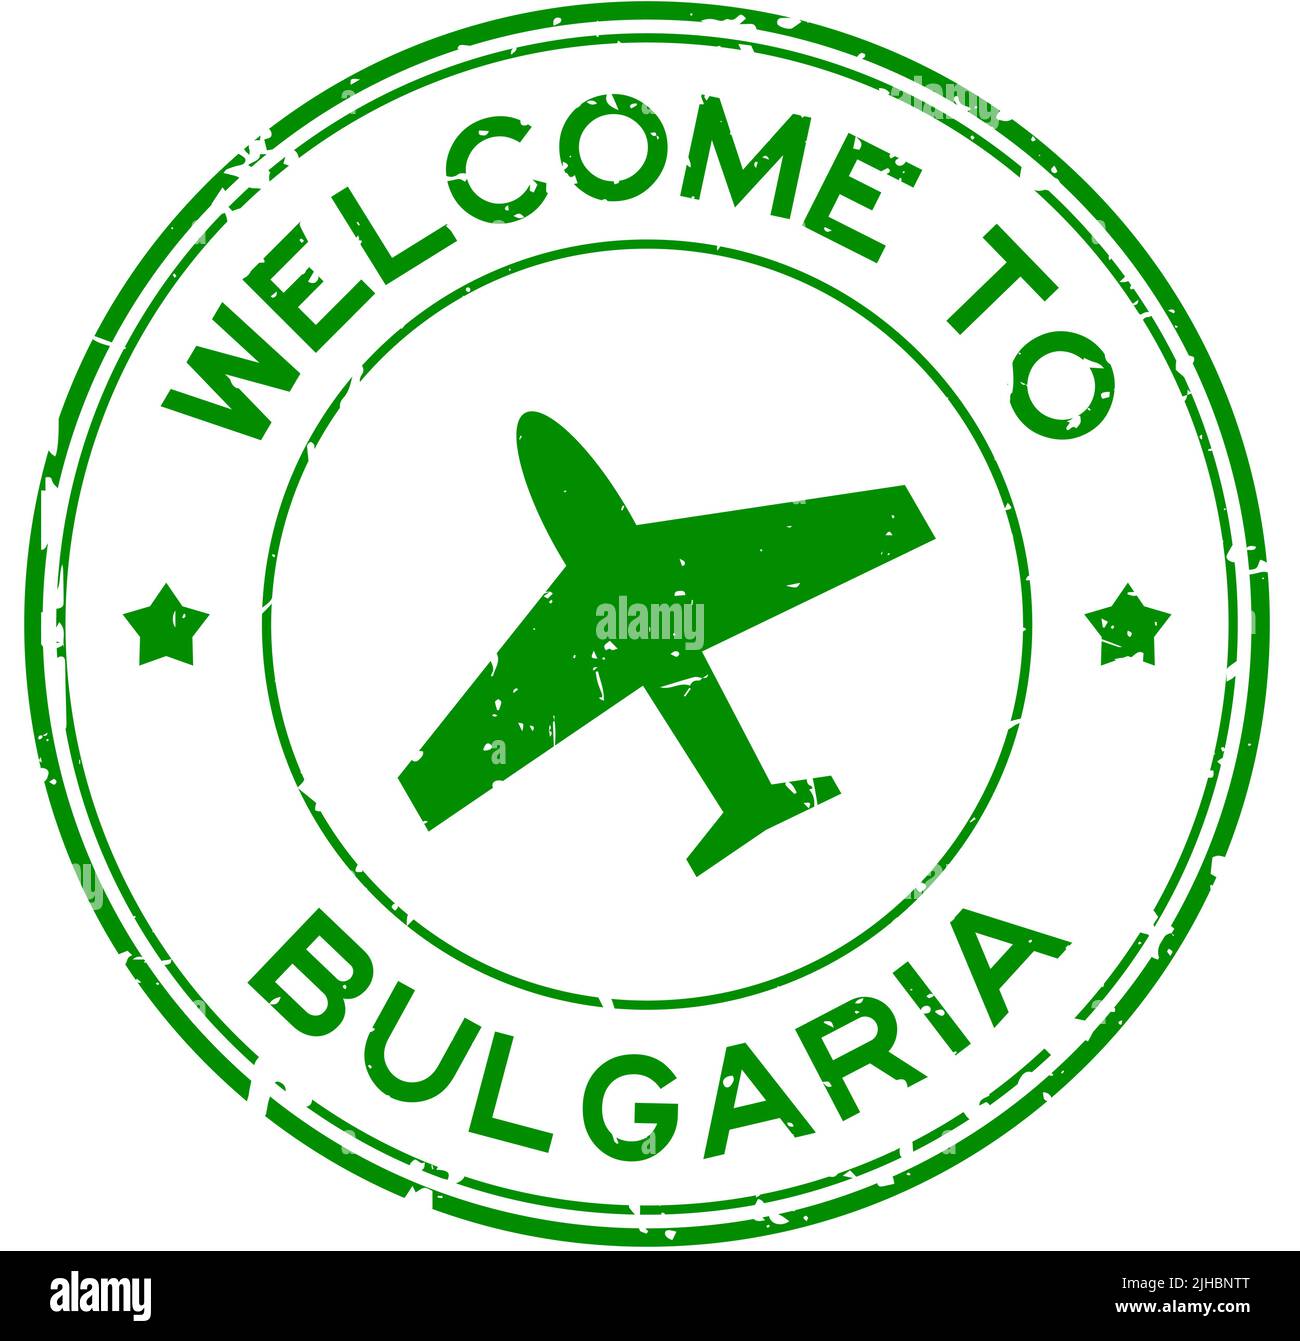 Grunge grün Willkommen in Bulgarien Wort mit Flugzeug-Symbol rund Gummi-Siegel-Stempel auf weißem Hintergrund Stock Vektor